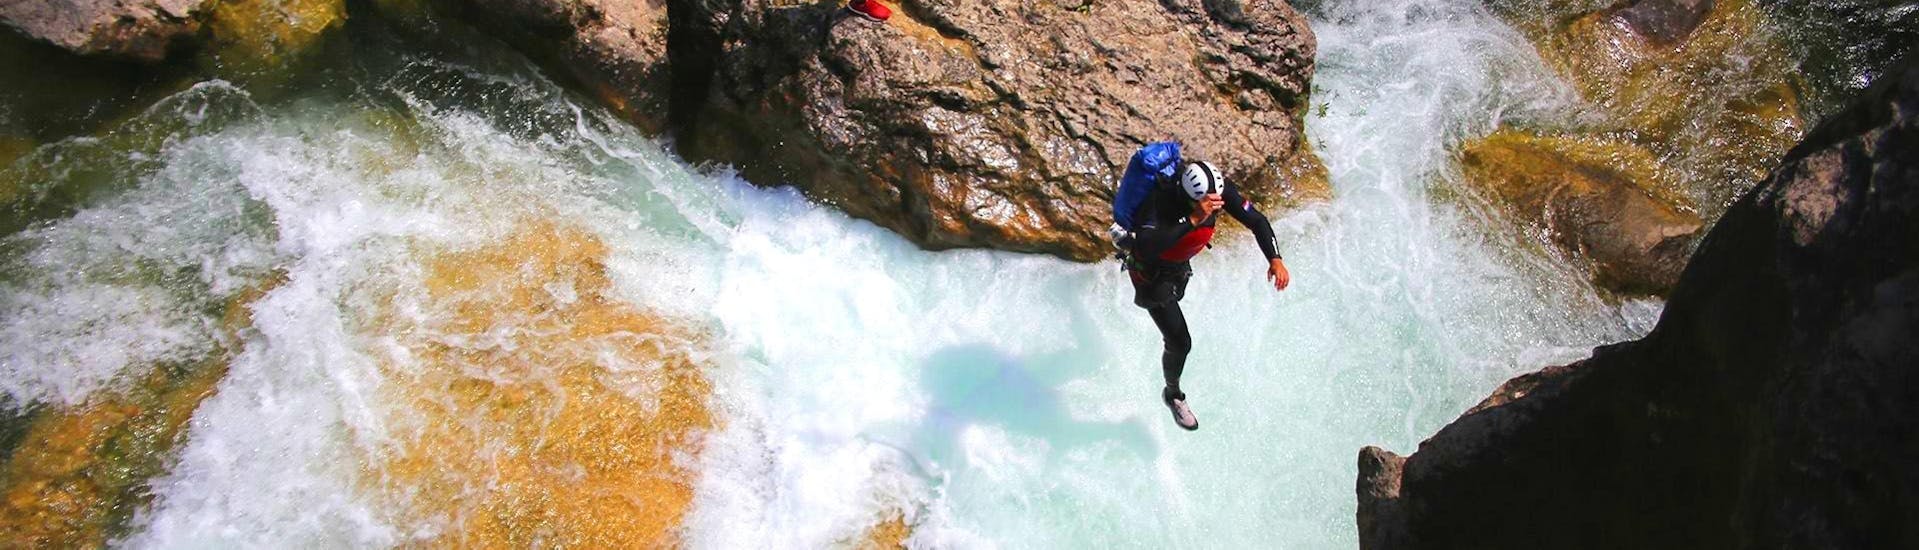 Een gids van Adventure Dalmatia springt in het water tijdens de Extreme Canyoning bij de Cetina-rivier.